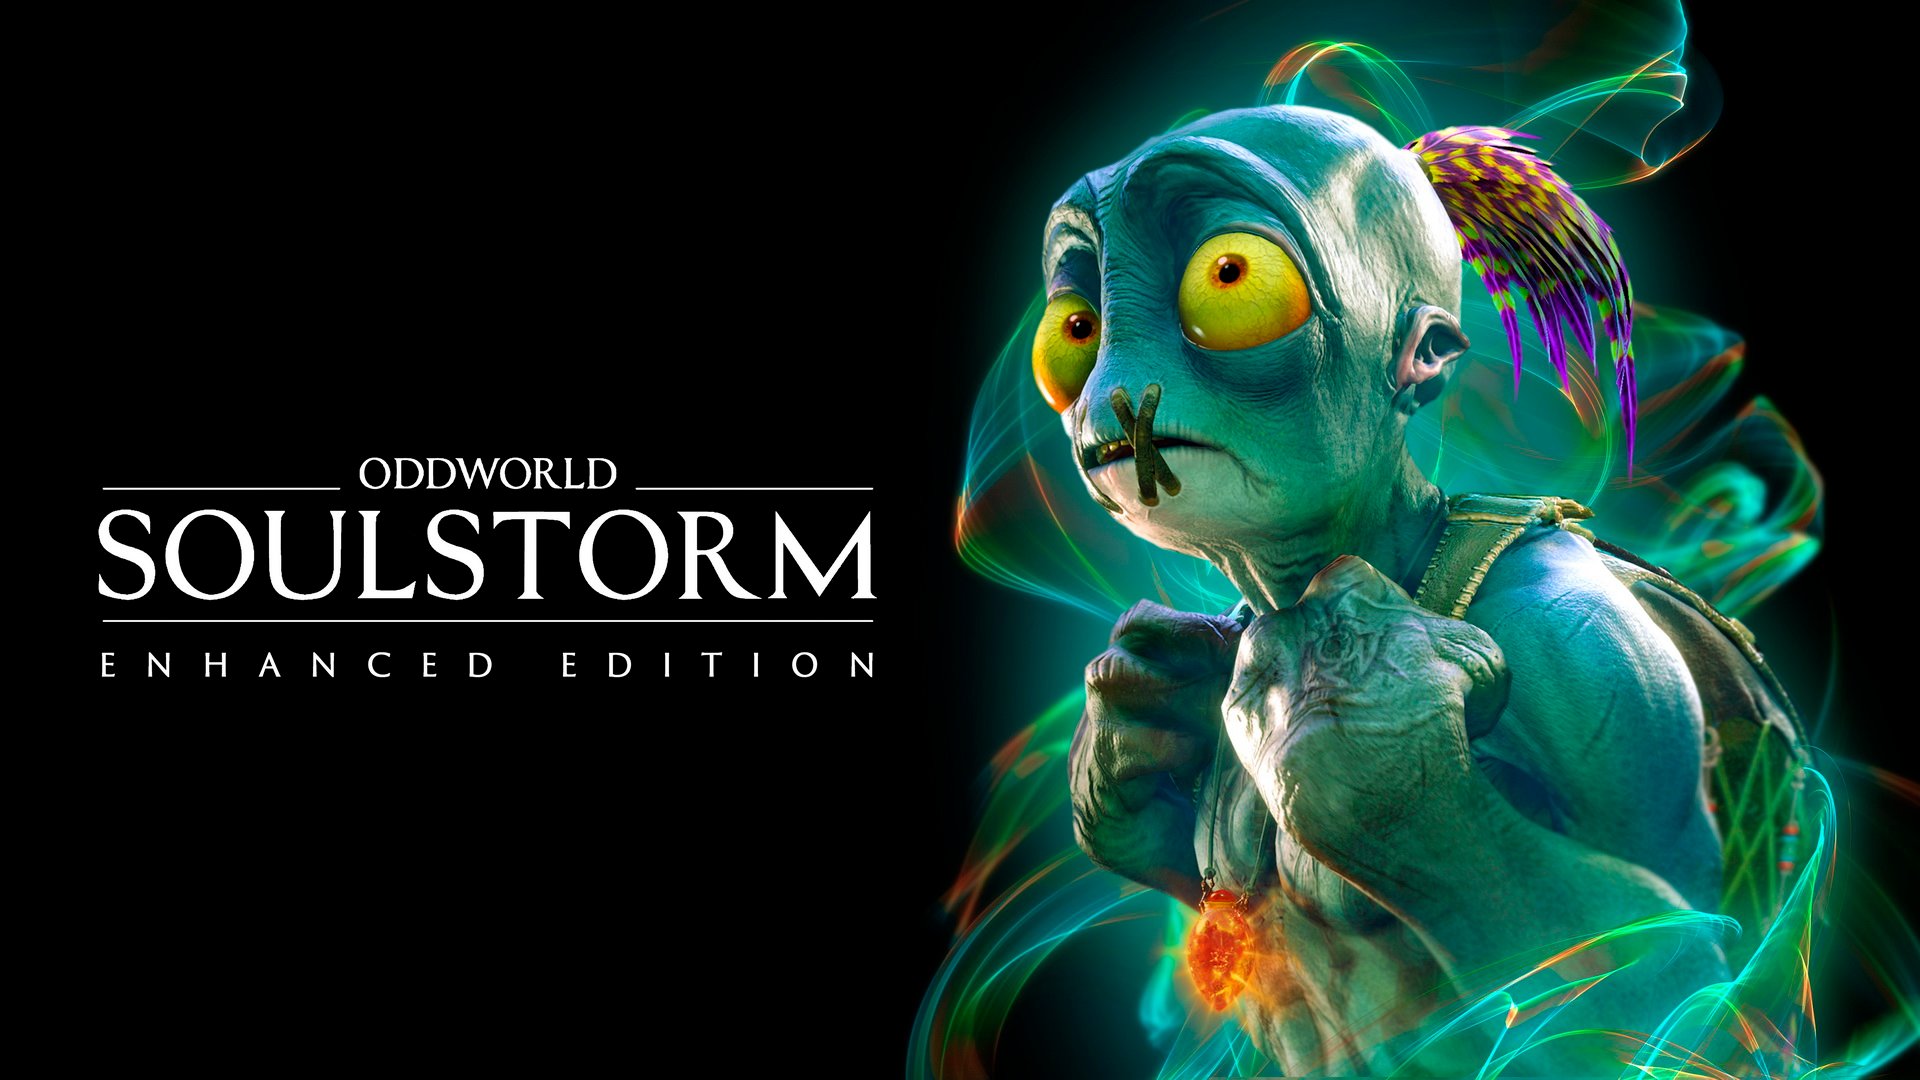 Oddworld Soulstorm Enhanced Edition s'annonce et présente ses éditions